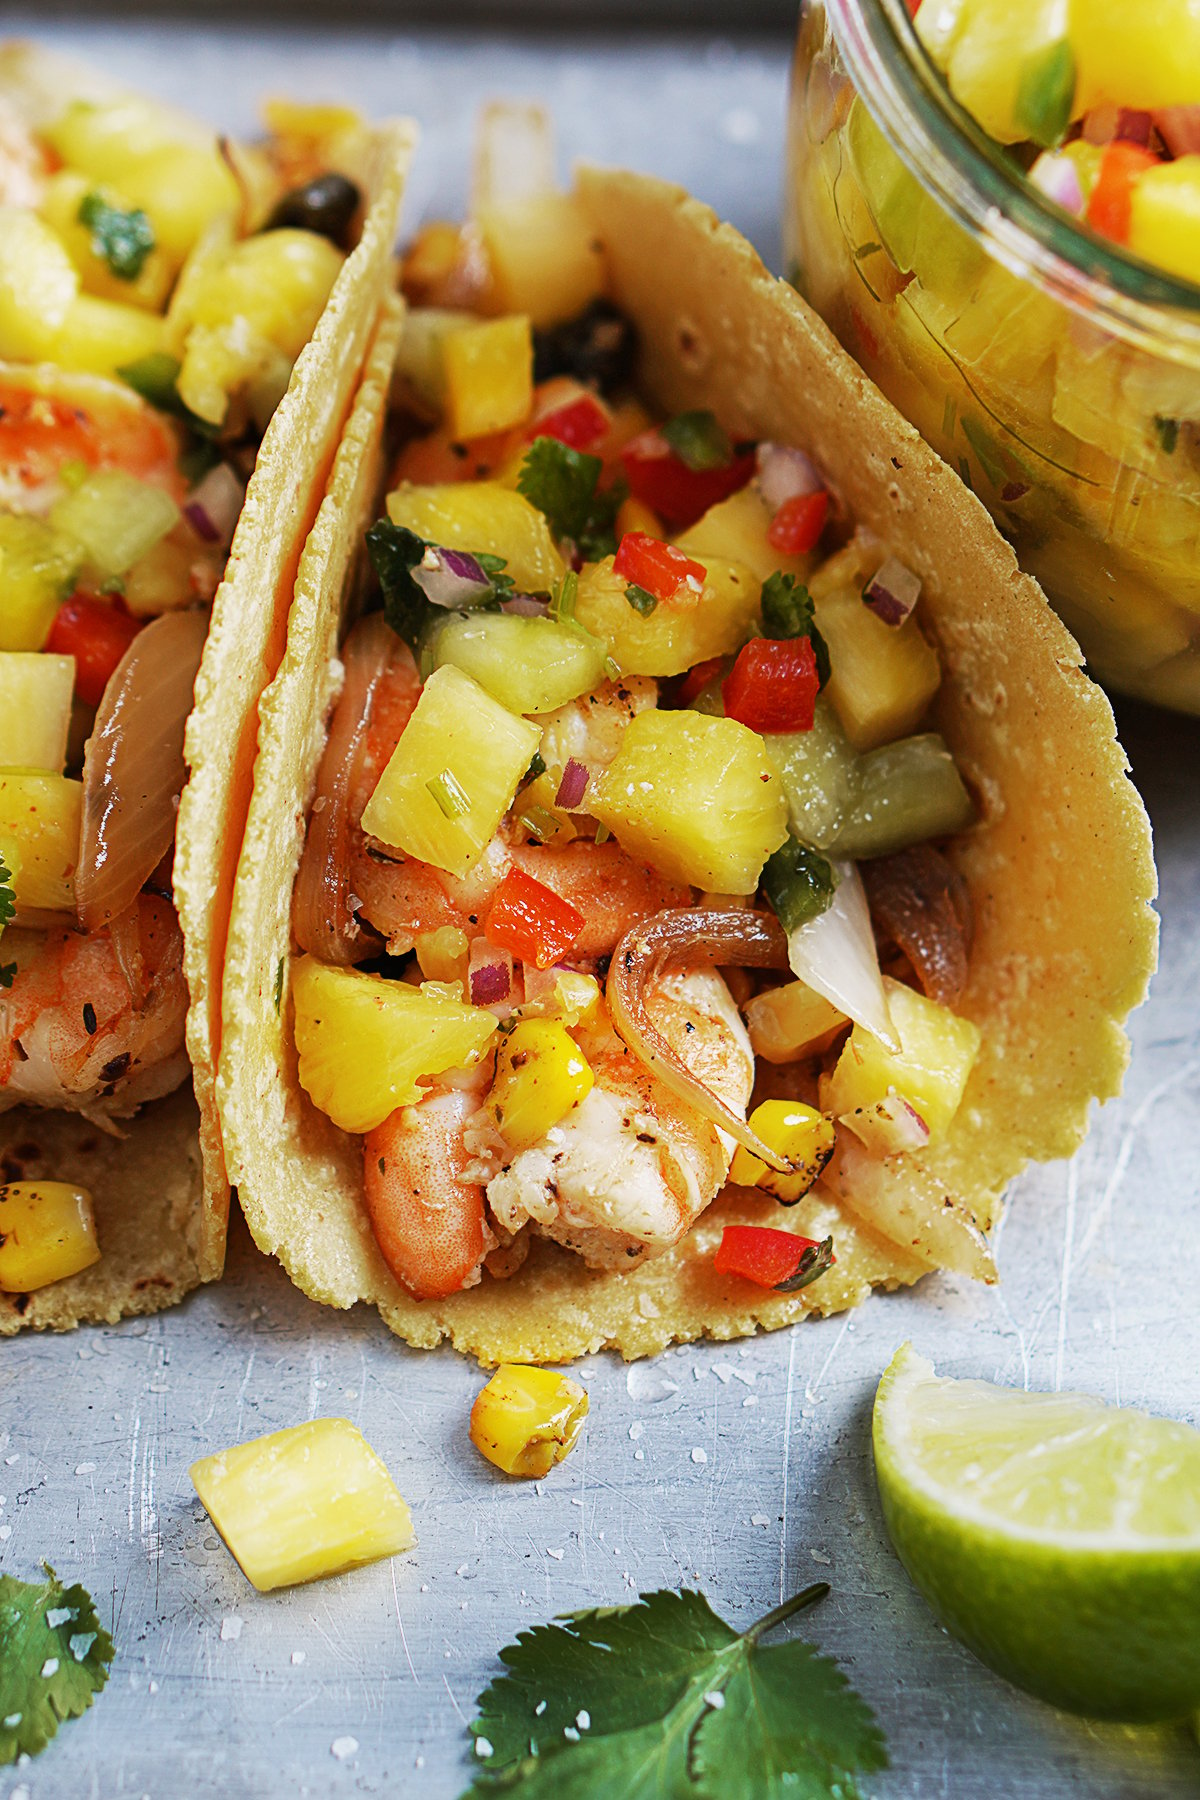 Tacos De Camaron (Shrimp Tacos) | Mexican Recipes by Muy Delish